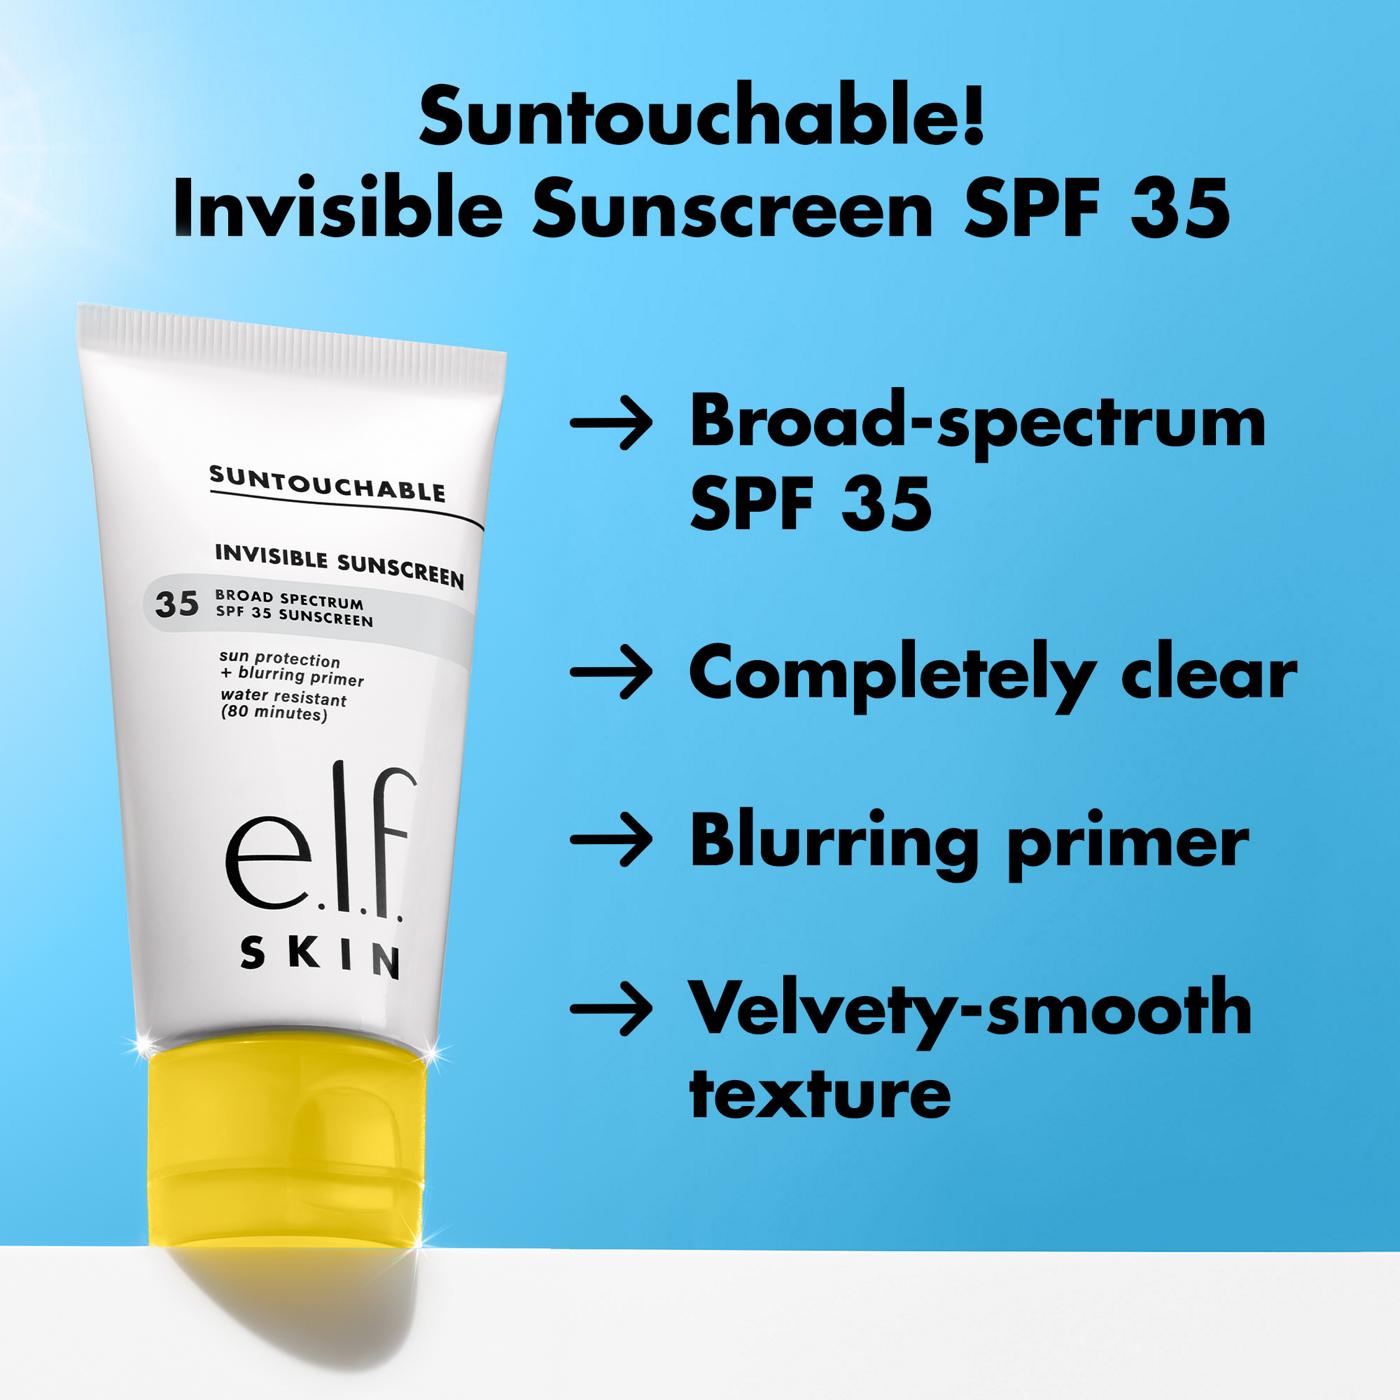 e.l.f. SKIN Suntouchable Invisible Sunscreen SPF 35; image 3 of 5